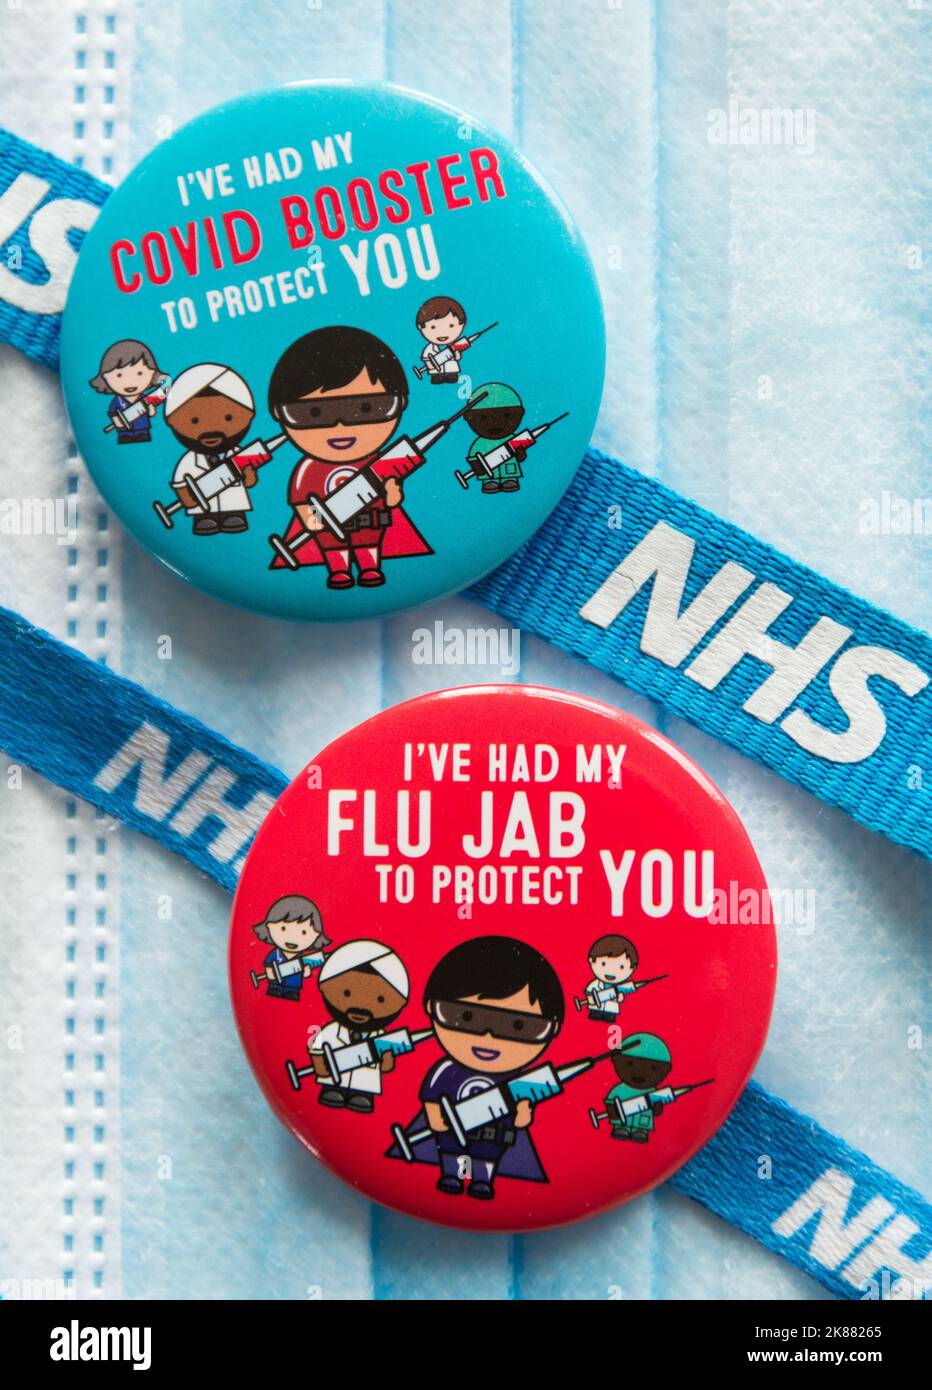 Des badges Covid 19 rehausseurs et de grippe colorés se posent sur un masque chirurgical et sont attachés à un cordon NHS Banque D'Images